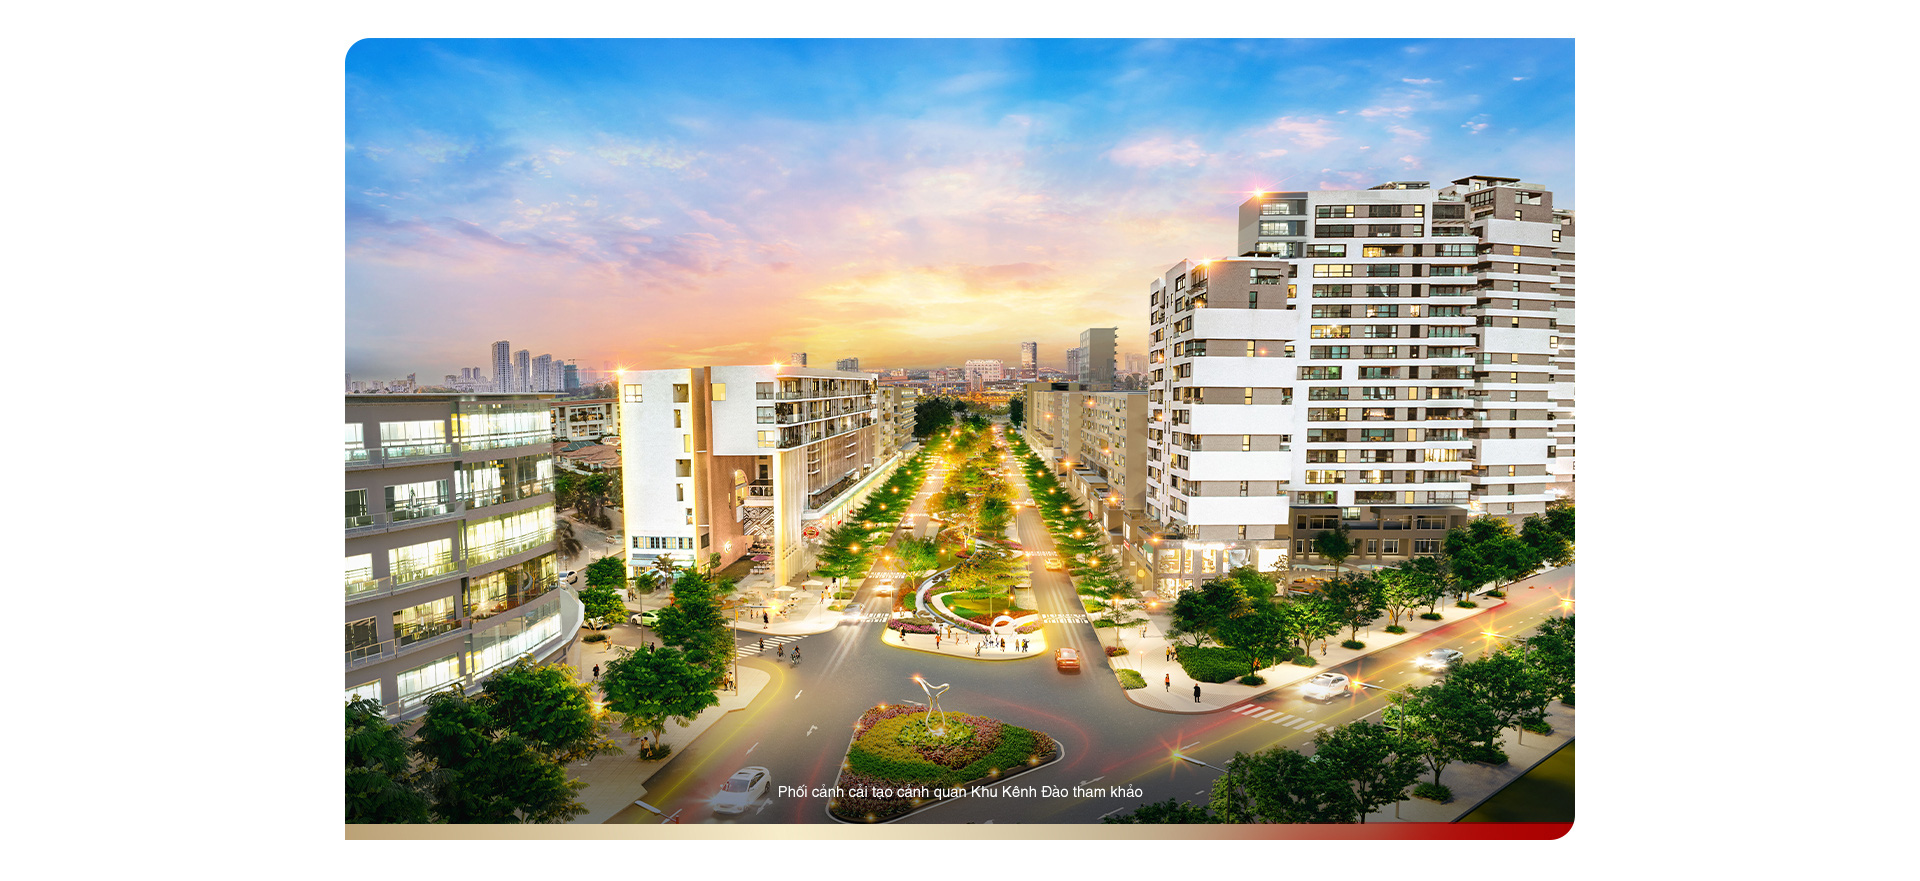 Bất động sản Phú Mỹ Hưng sắp đón sóng tăng trưởng từ loạt cú hích hạ tầng dịch vụ đô thị - Ảnh 2.